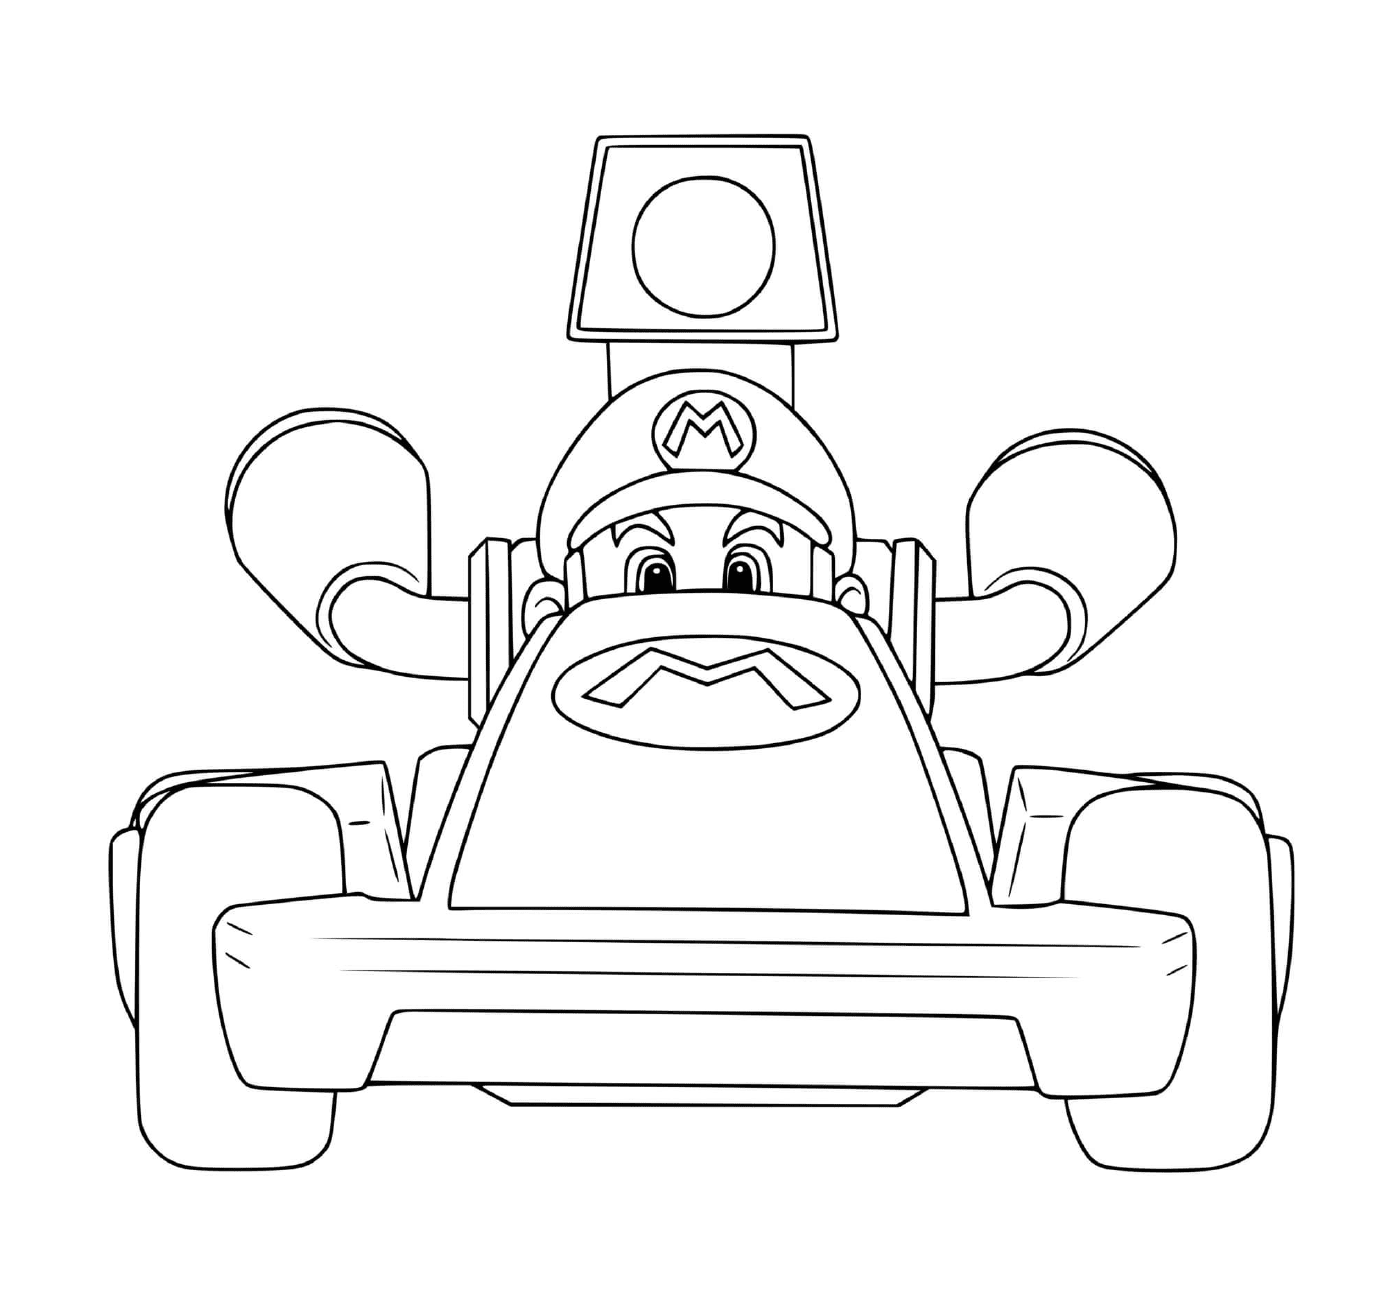  Un personaggio di Mario Kart 